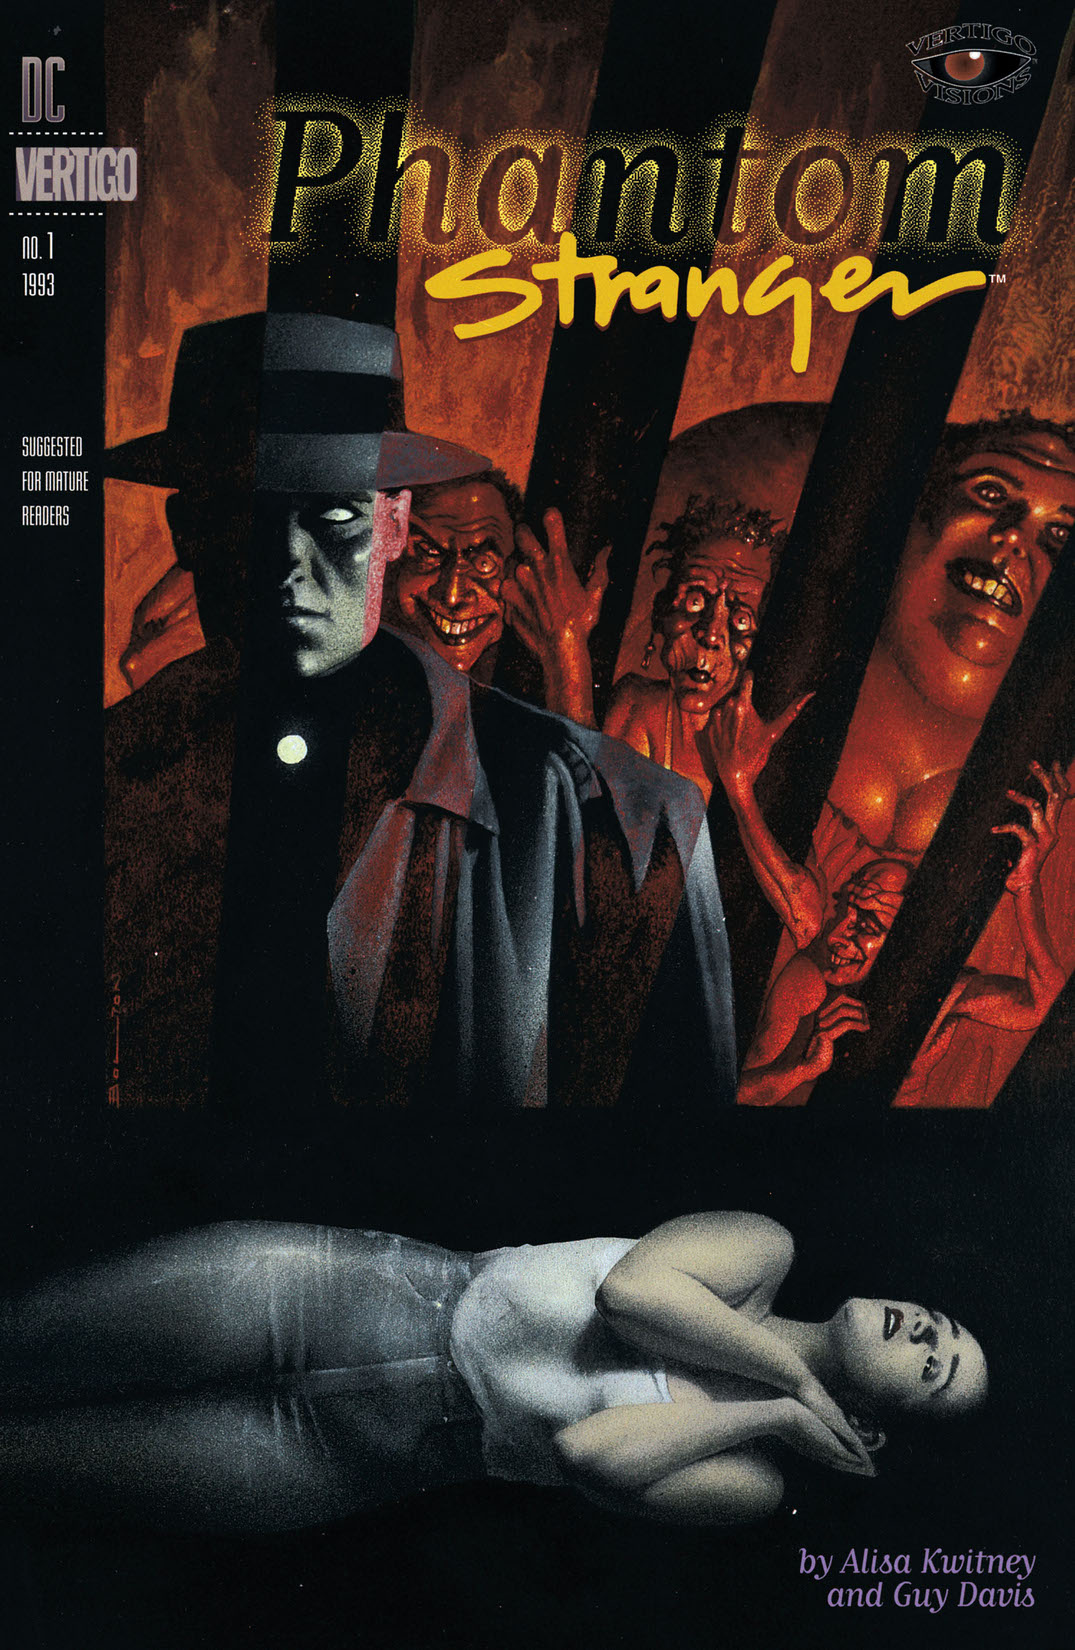 Vertigo Visions - The Phantom Stranger #1 preview images